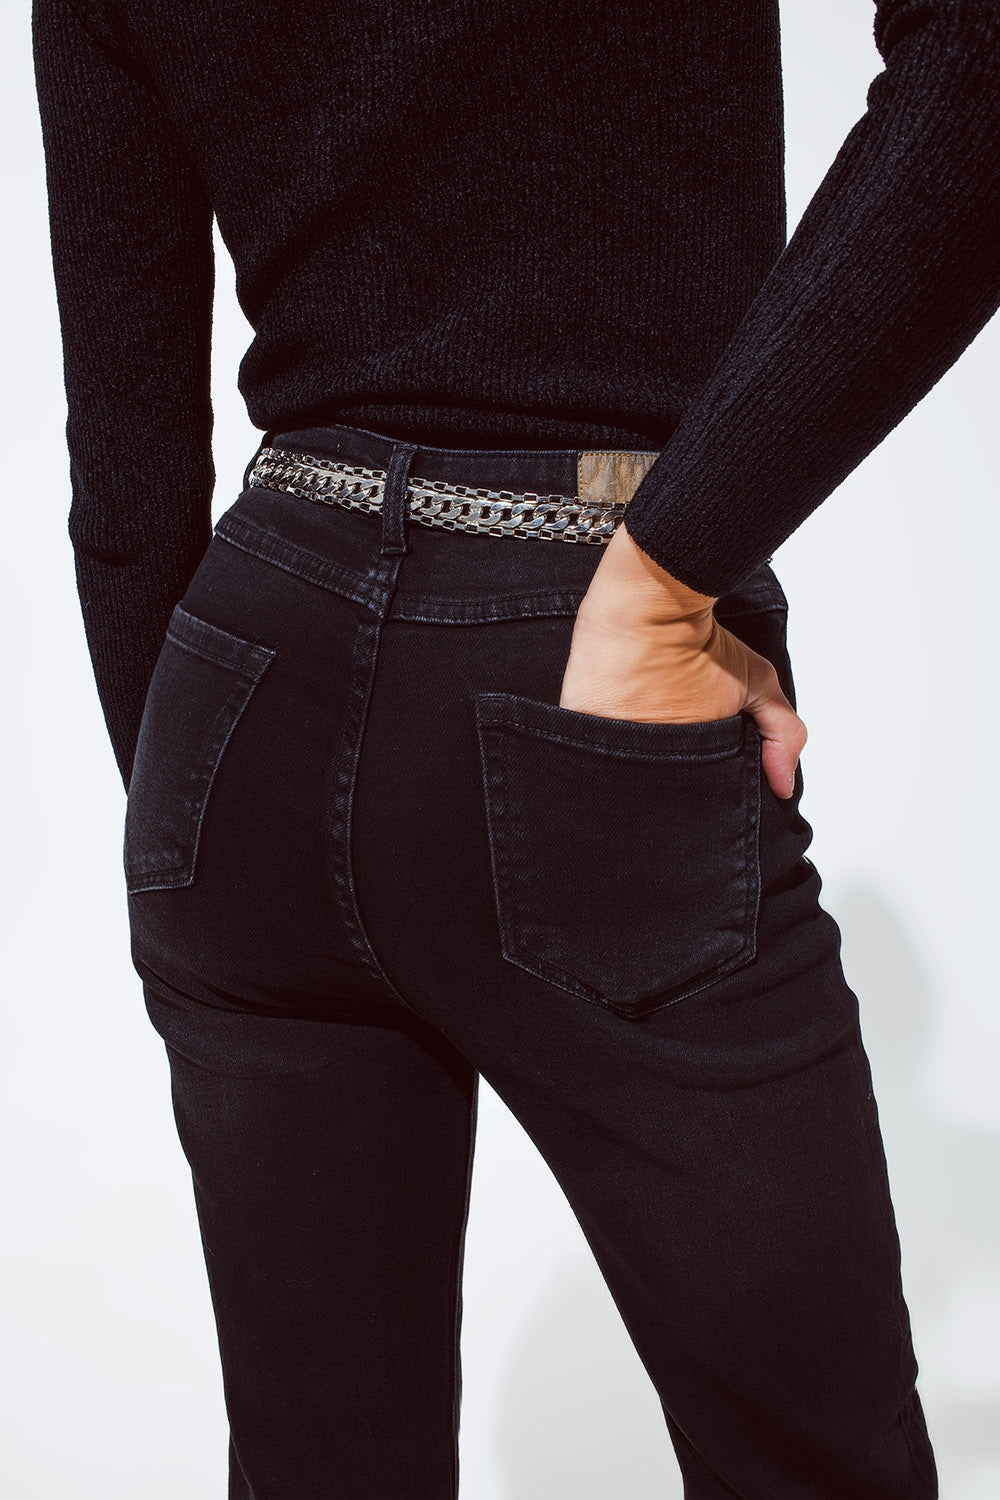 Jeans rectos en negro con detalles de strass plateados